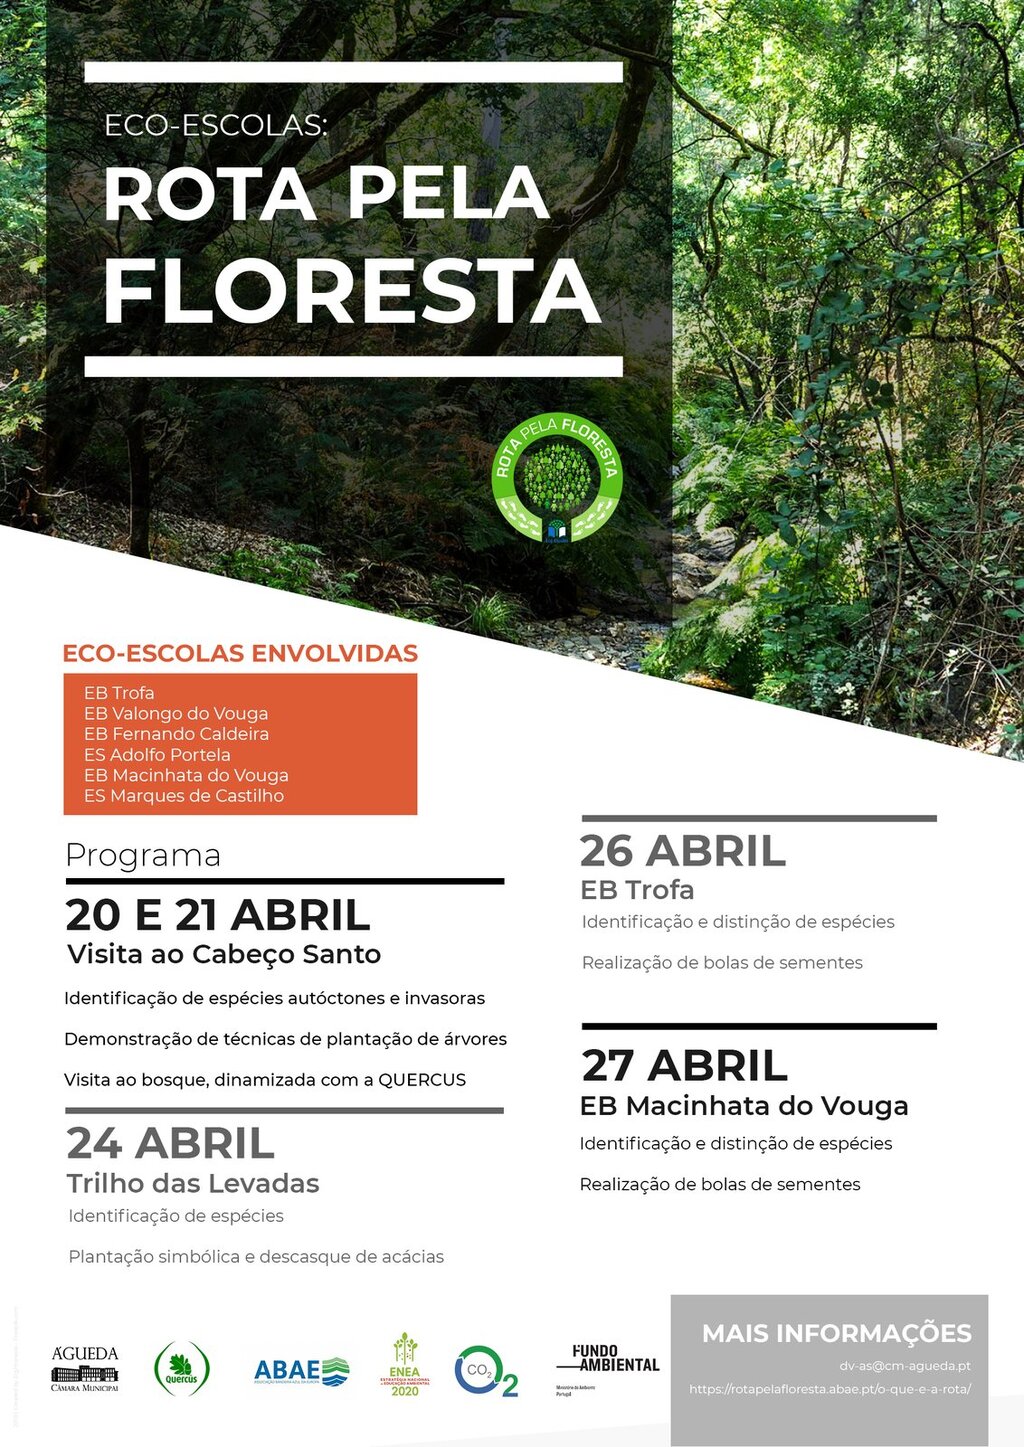 Eco-Escolas: Rota pela Floresta de 20 a 27 de abril